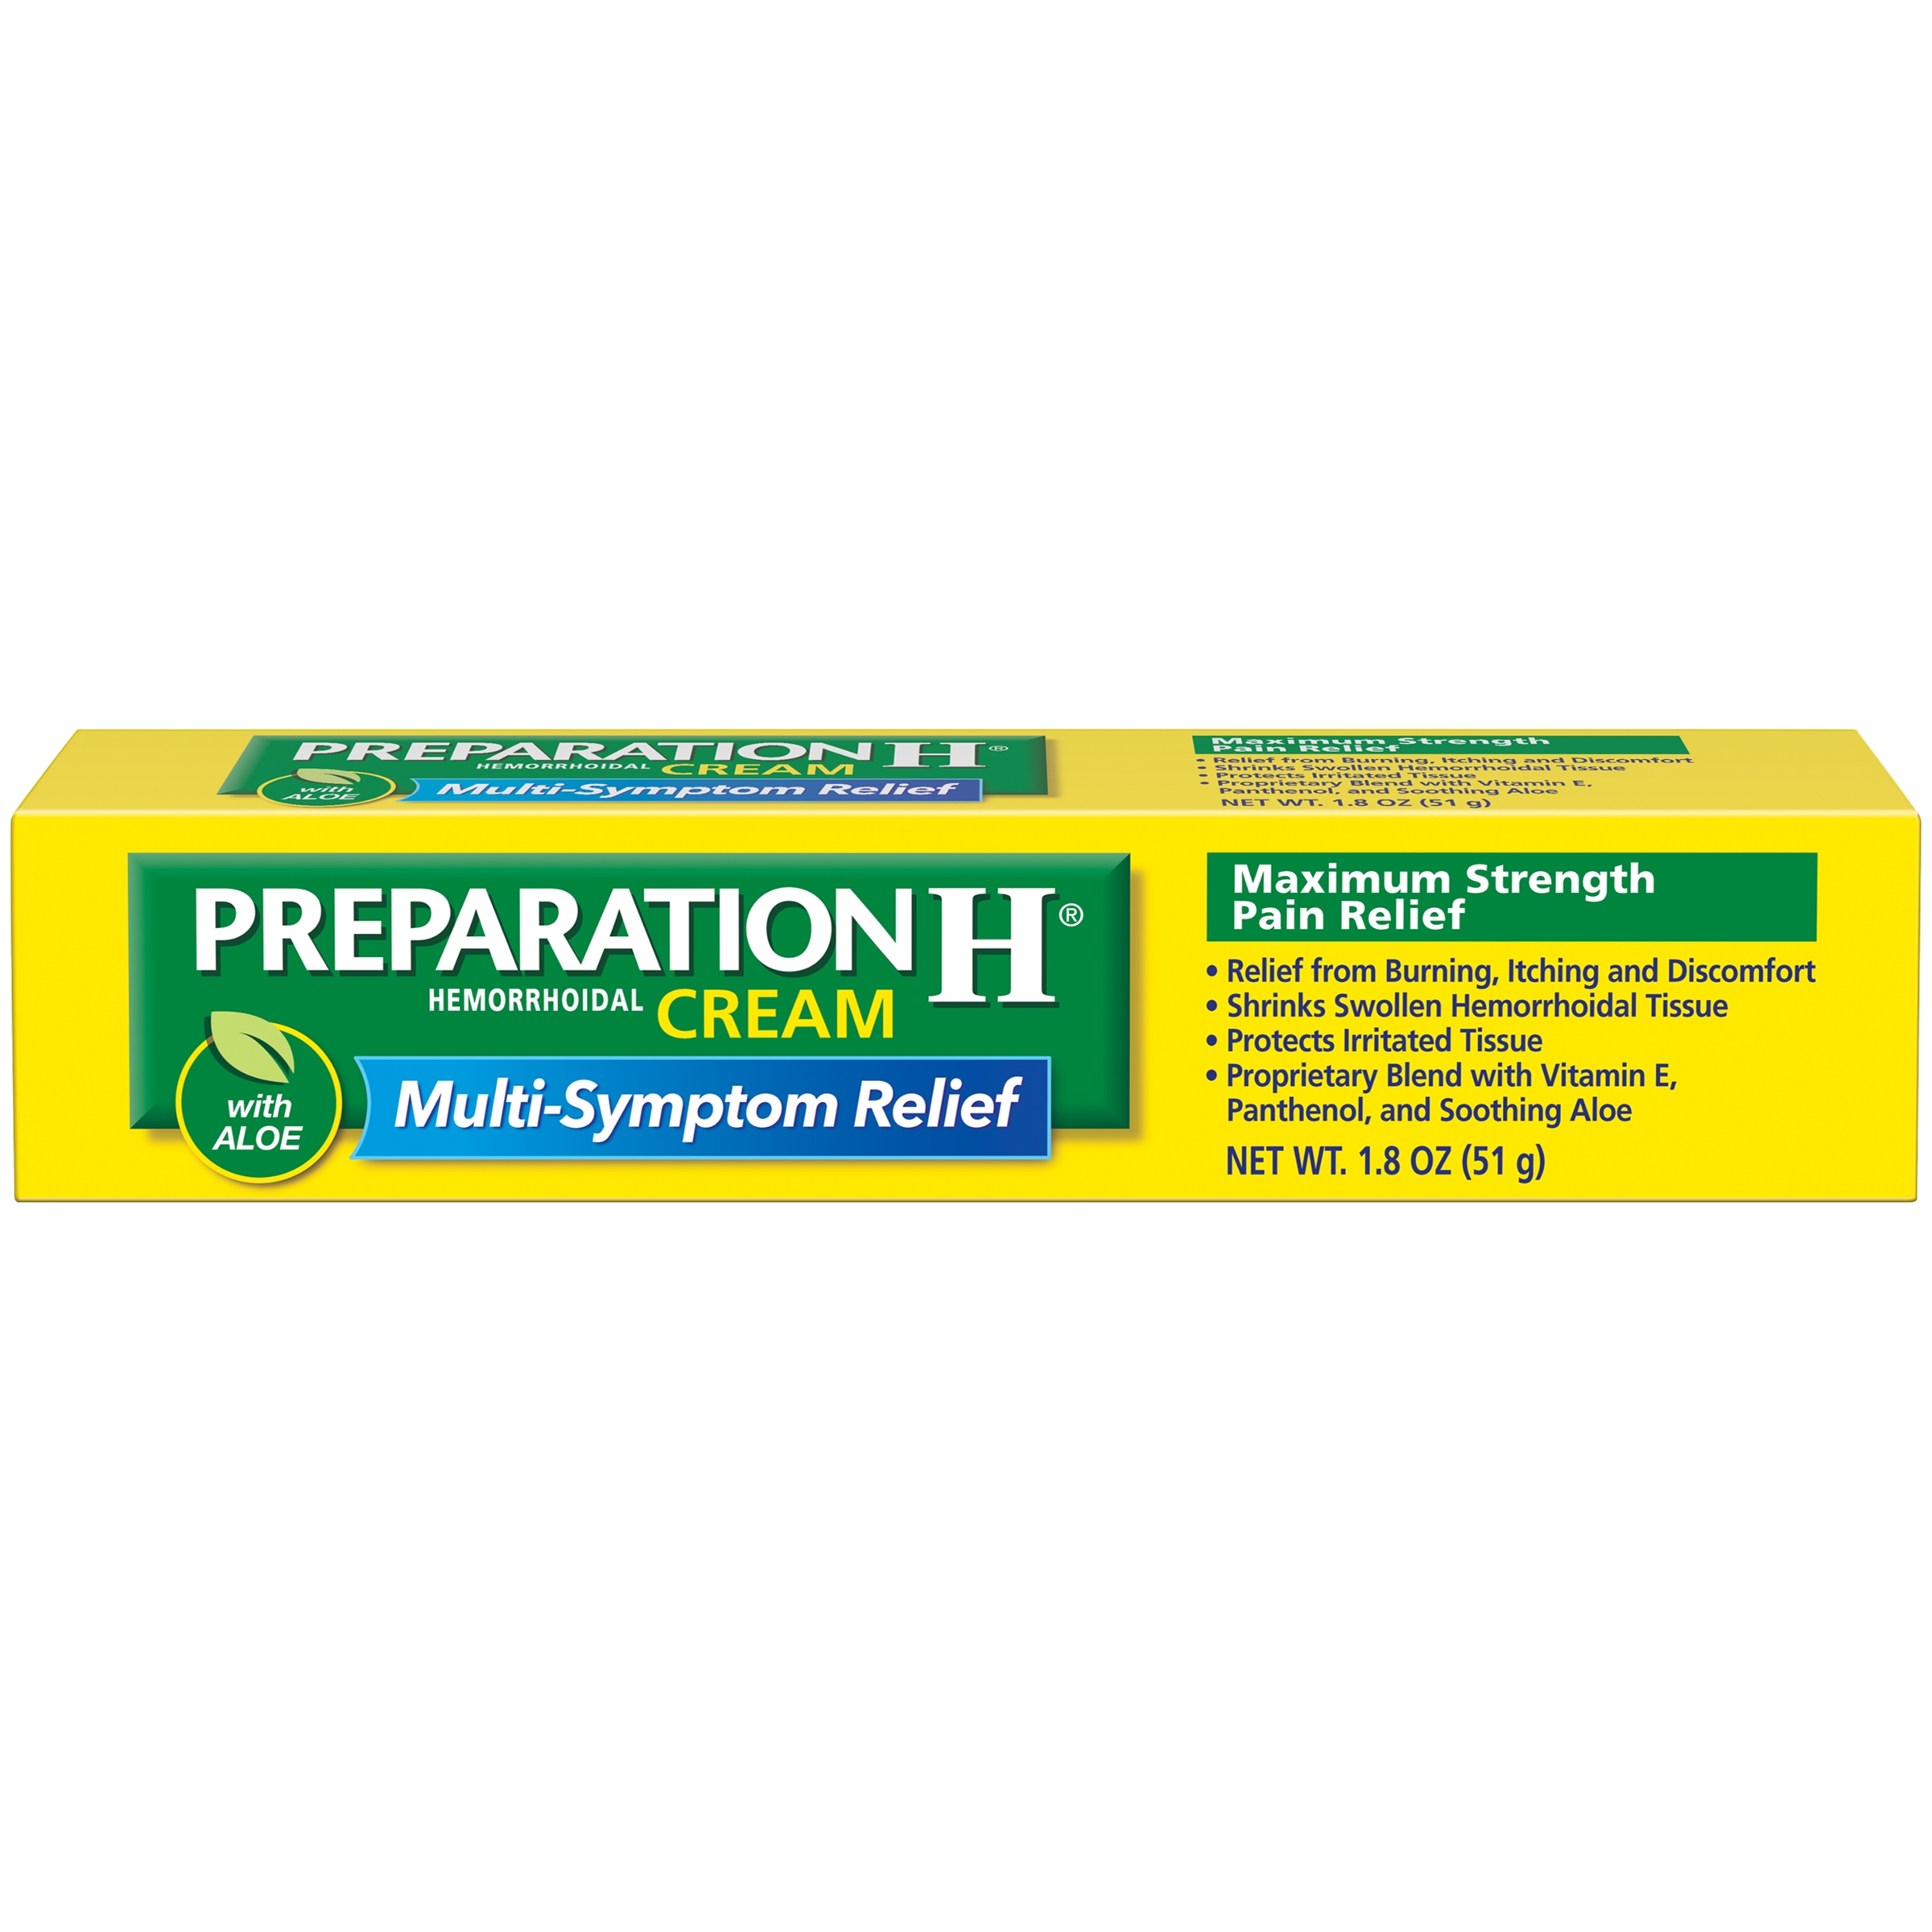 Preparation H® Maxiumum Strength Pain Relief Cream 1.8 oz. Box - image 1 of 12